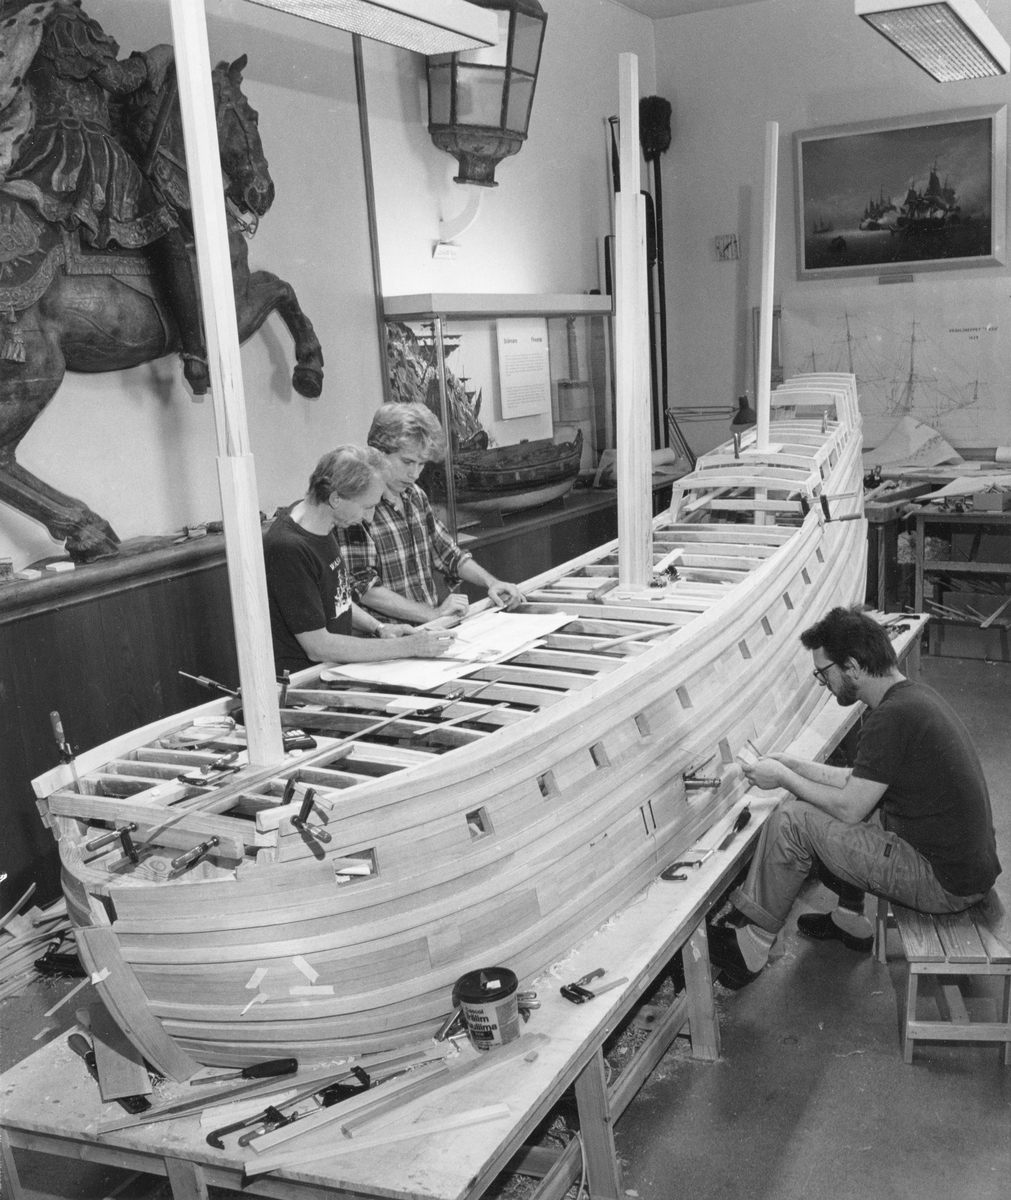 Modellbyggarna Göran Forss, Stefan Bruhn och Lars Eriksson i arbete med modellen av Vasa i skala 1:10.